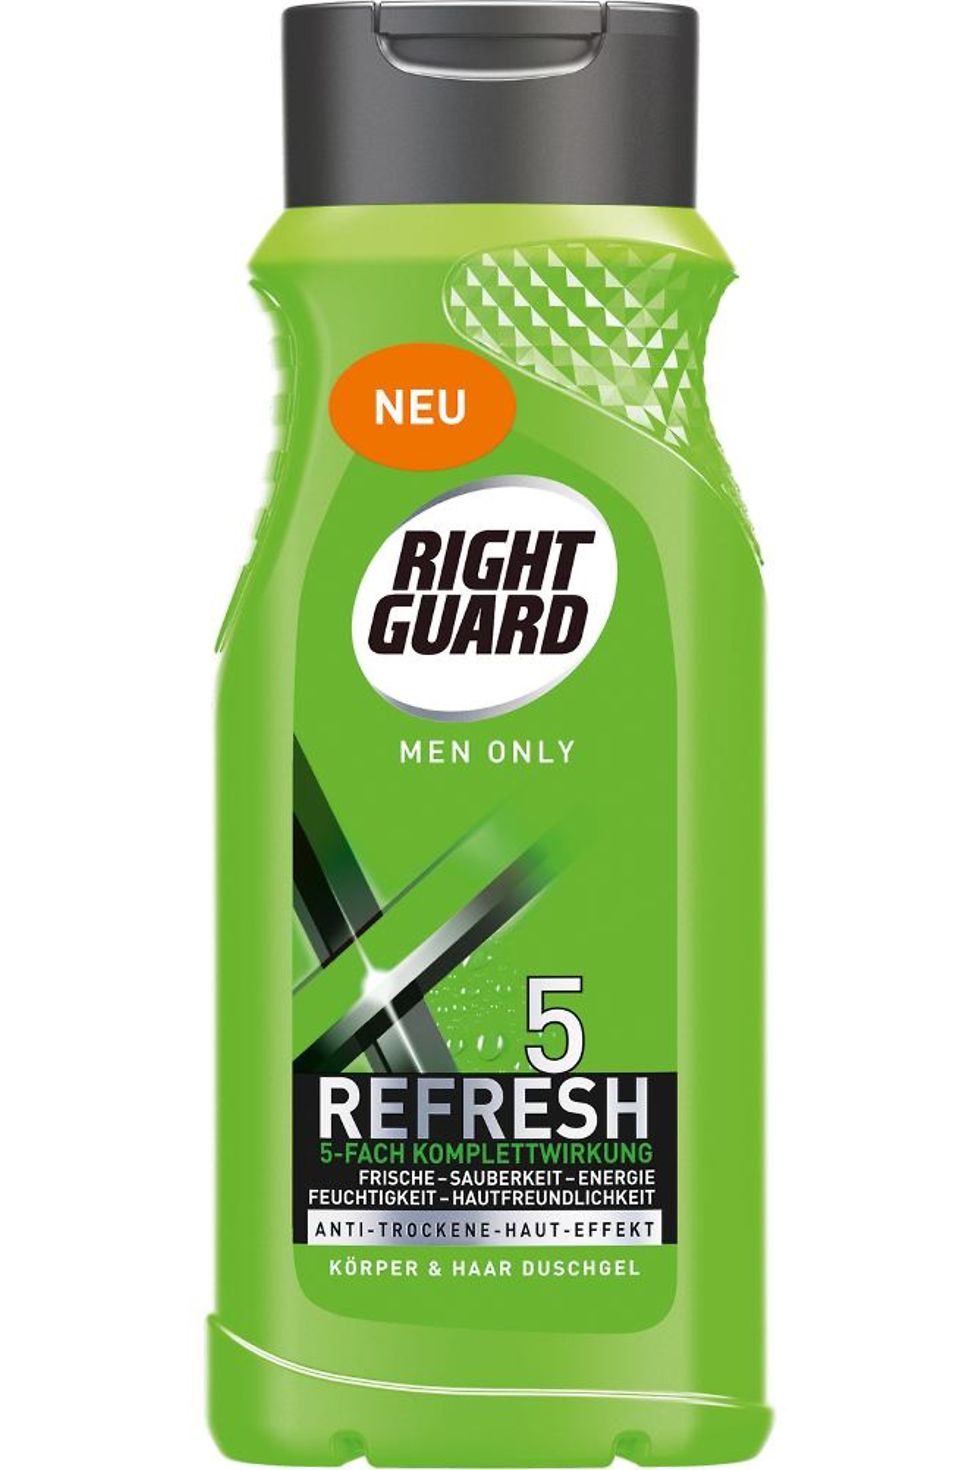 Right Guard Refresh 5